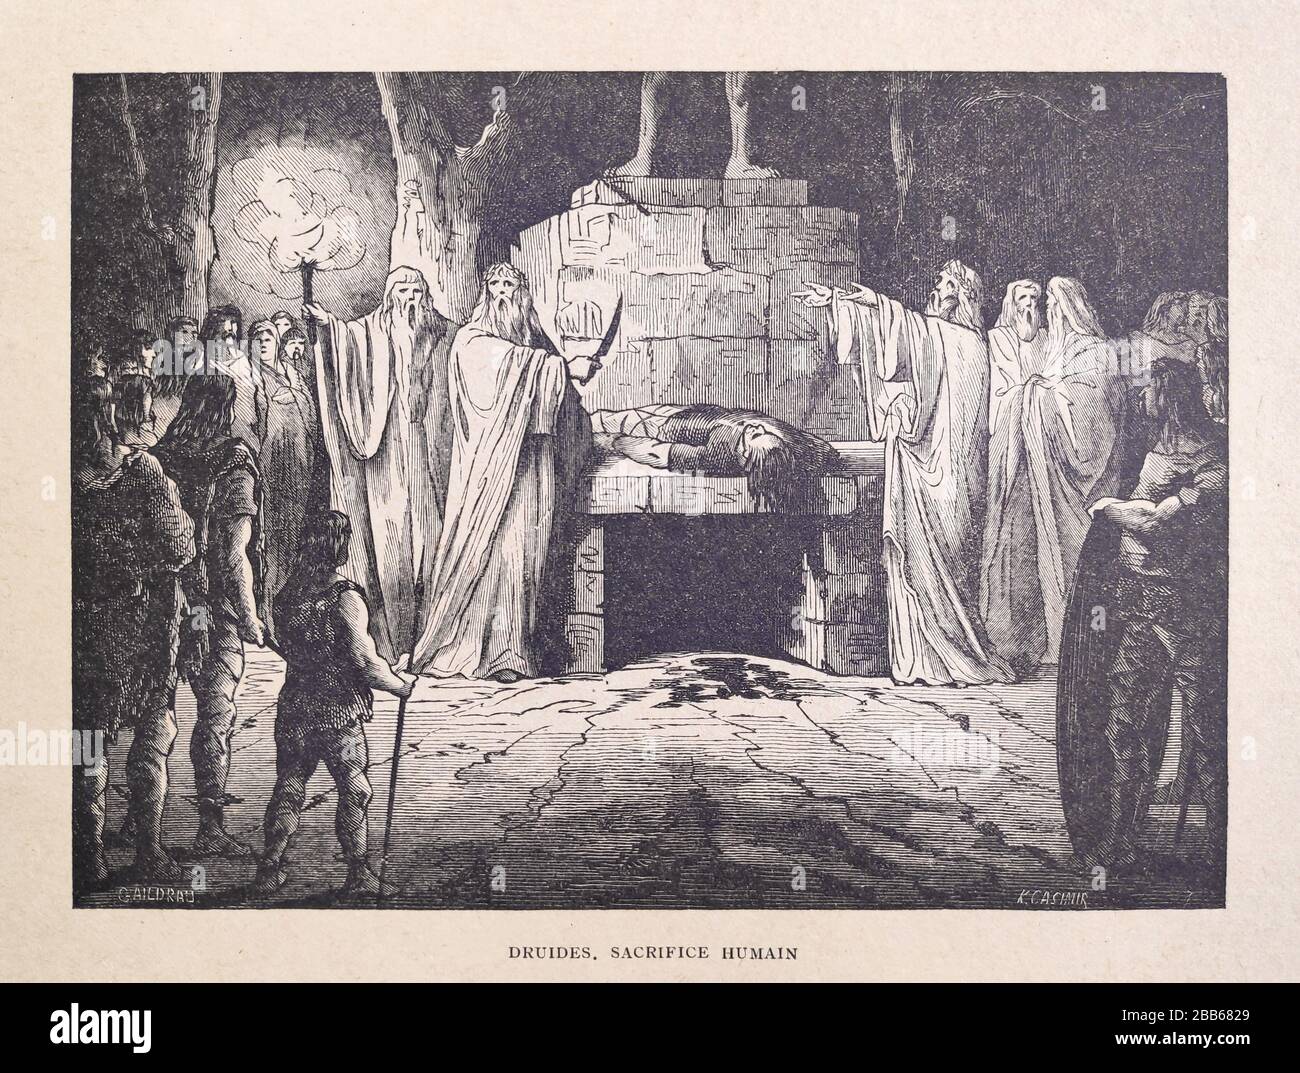 Illustration d'un druides pratiquant le sacrifice humain par Jules Gaildrau et gravé par K. Casimir imprimé à la fin du XIXe siècle. Banque D'Images